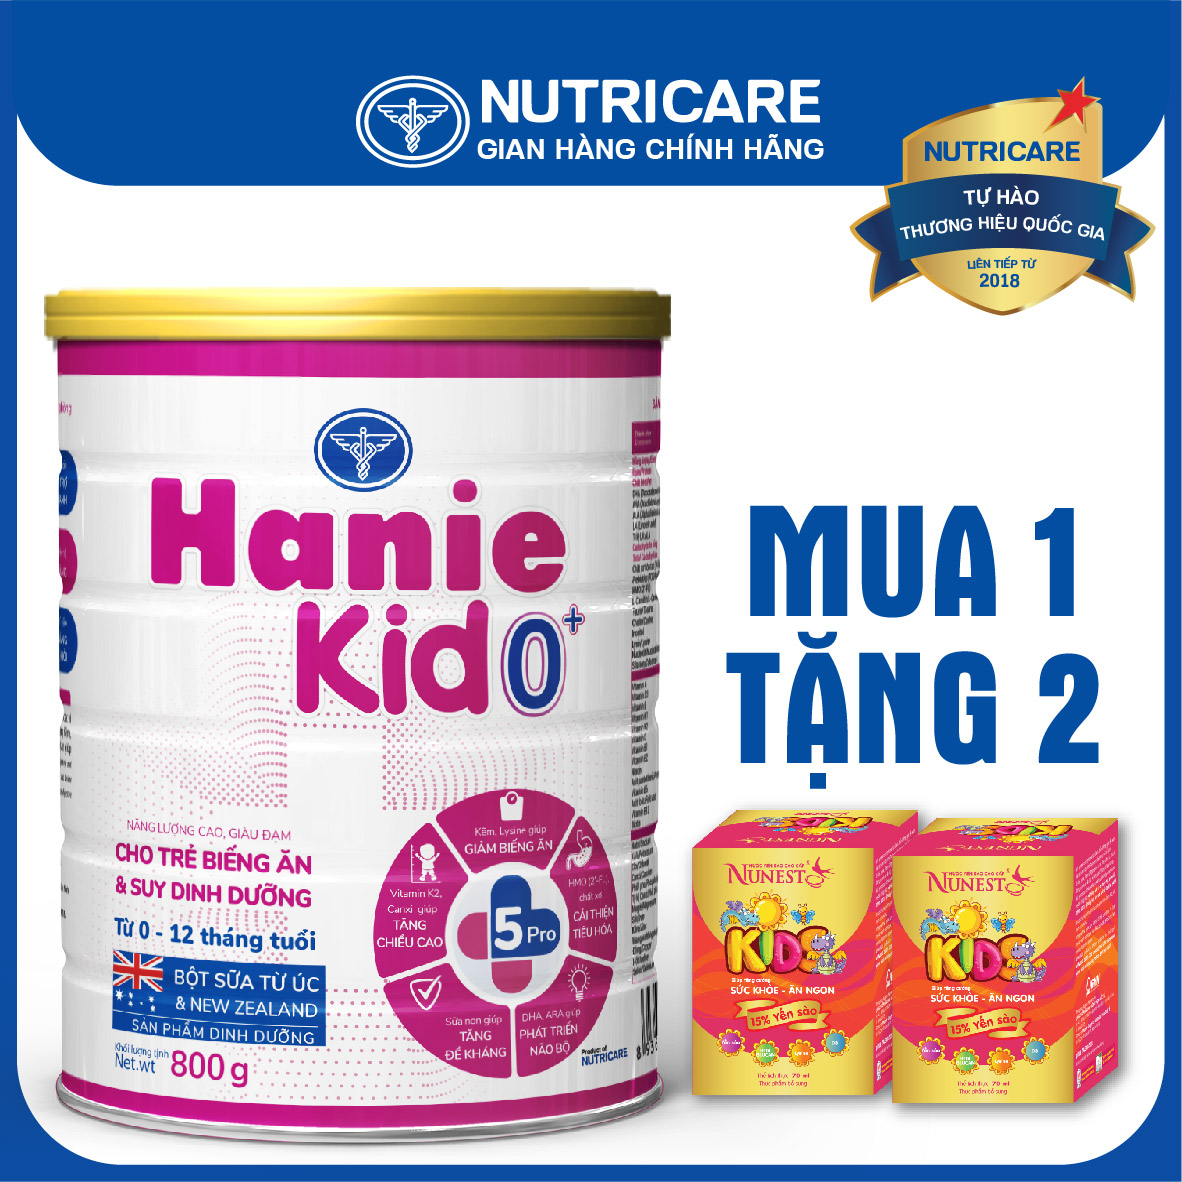 [Tặng 2 lọ yến] Sữa bột Nutricare Hanie Kid 0+ cho trẻ biếng ăn suy dinh dưỡng 800g